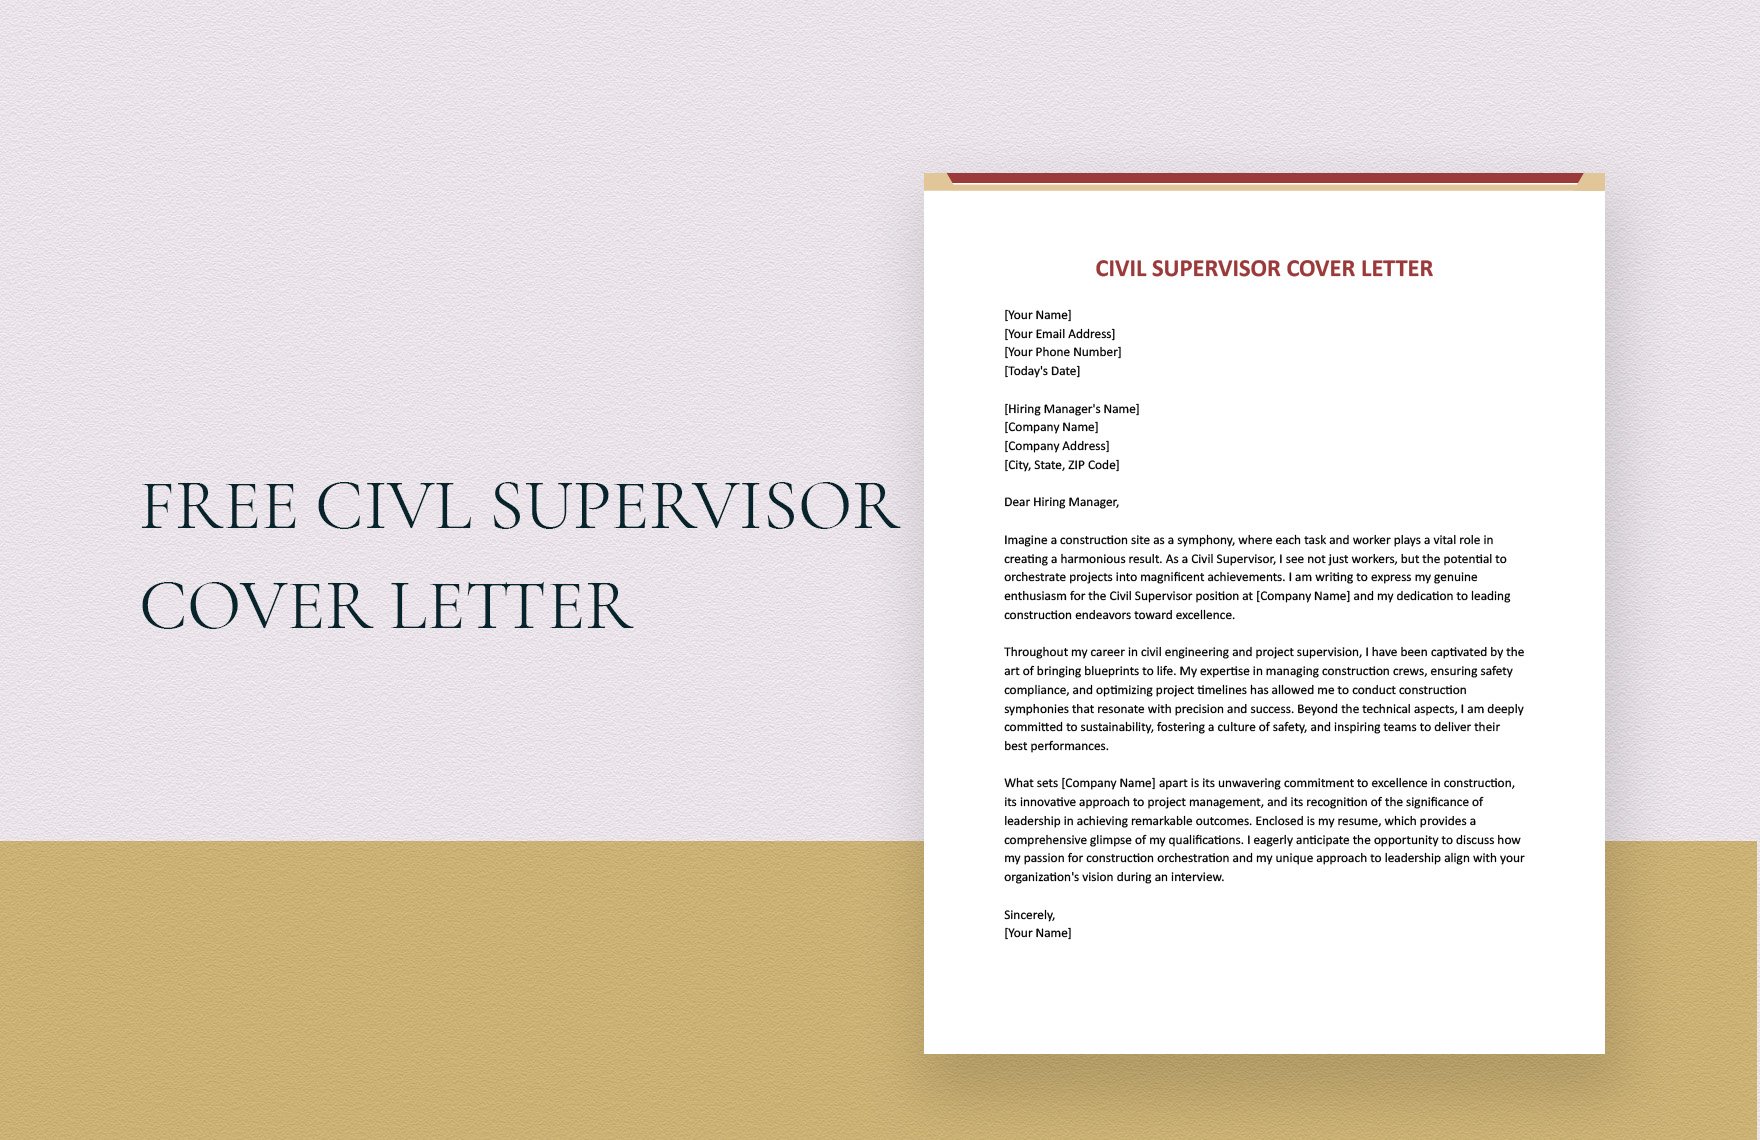 Civil Supervisor Cover Letter